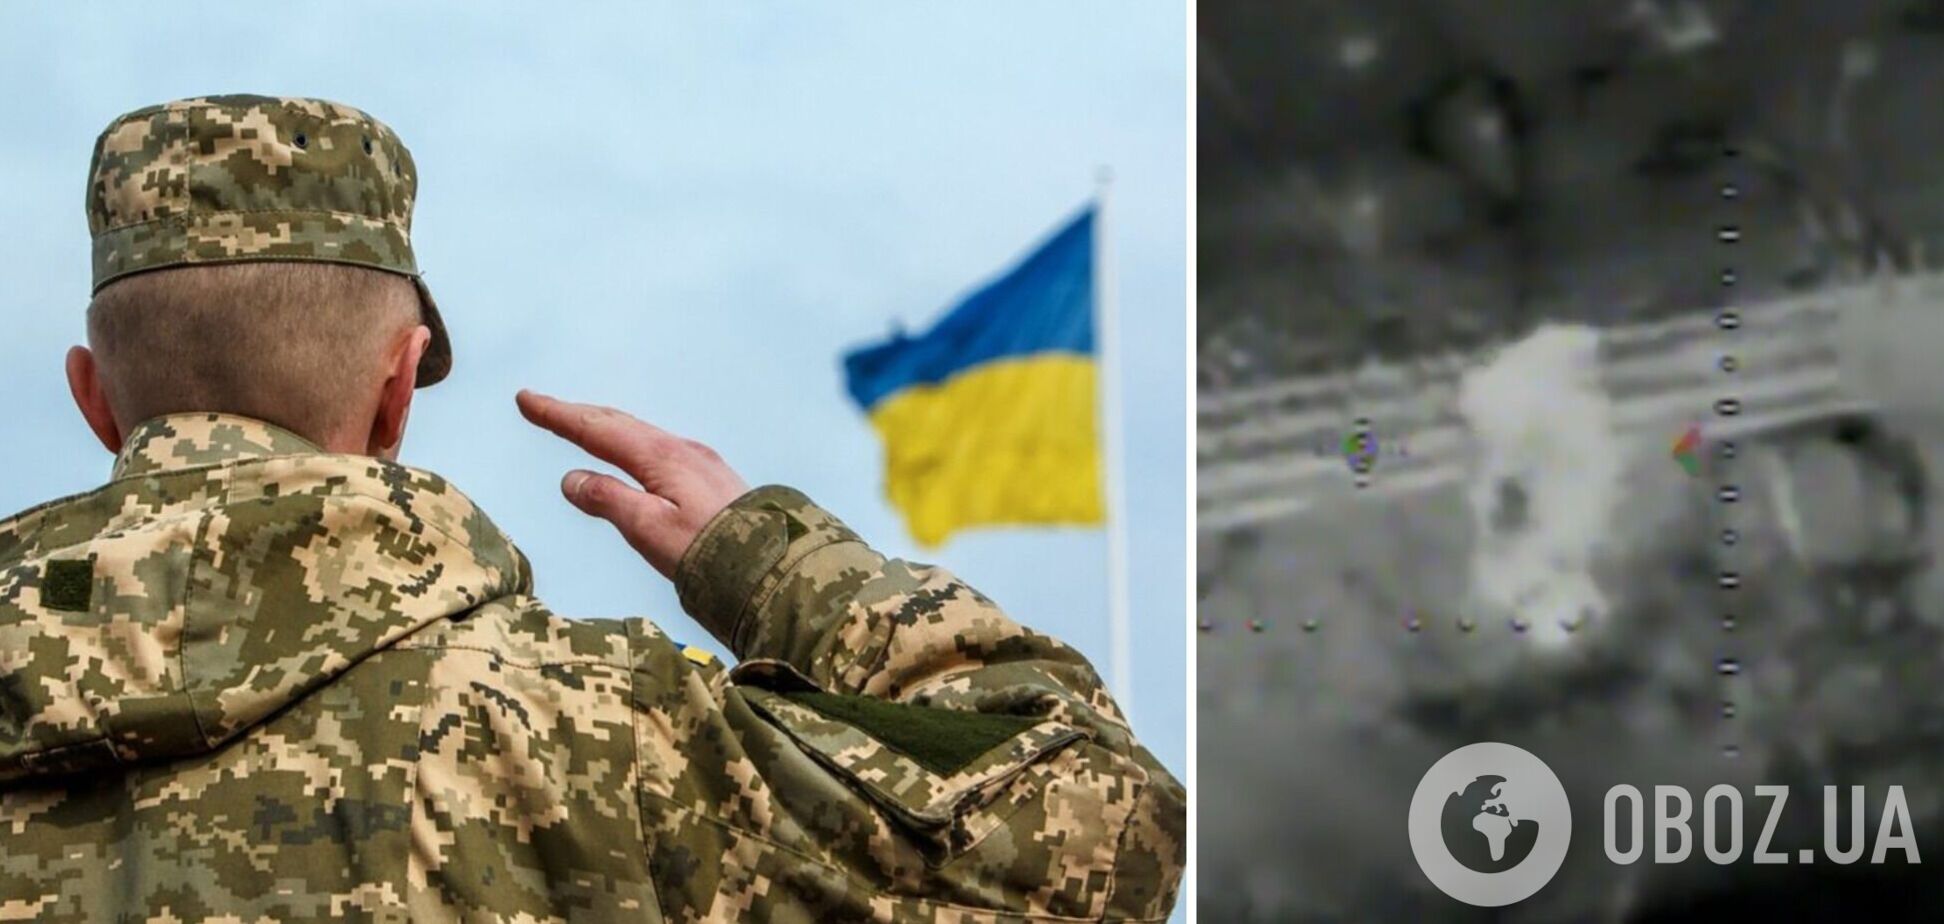 'Подарок' прилетел точно в цель: украинские защитники с помощью дрона уничтожили вражескую технику. Видео